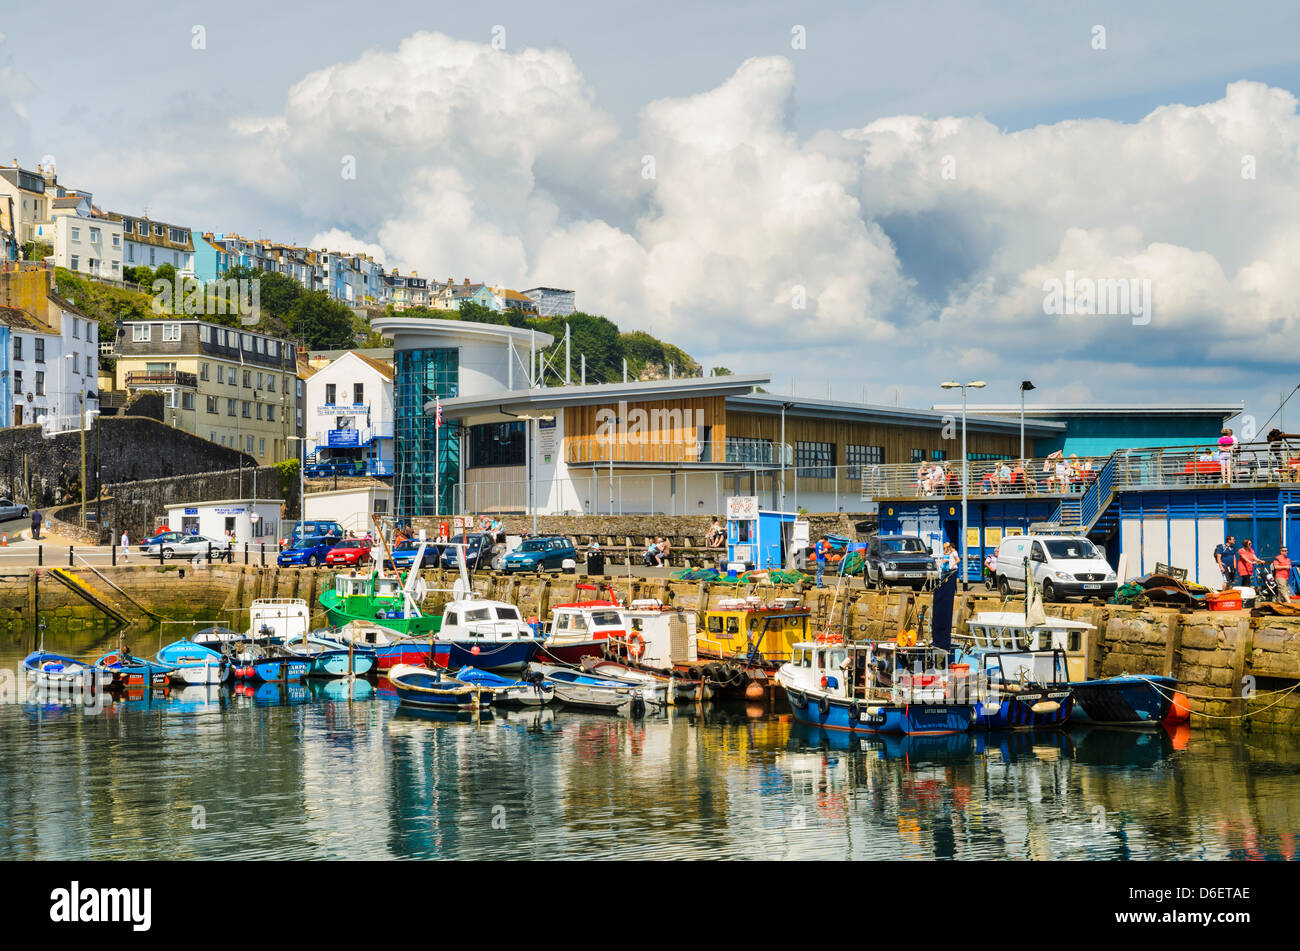 Les chalutiers de pêche dans le port de Brixham, Devon, Angleterre. Banque D'Images